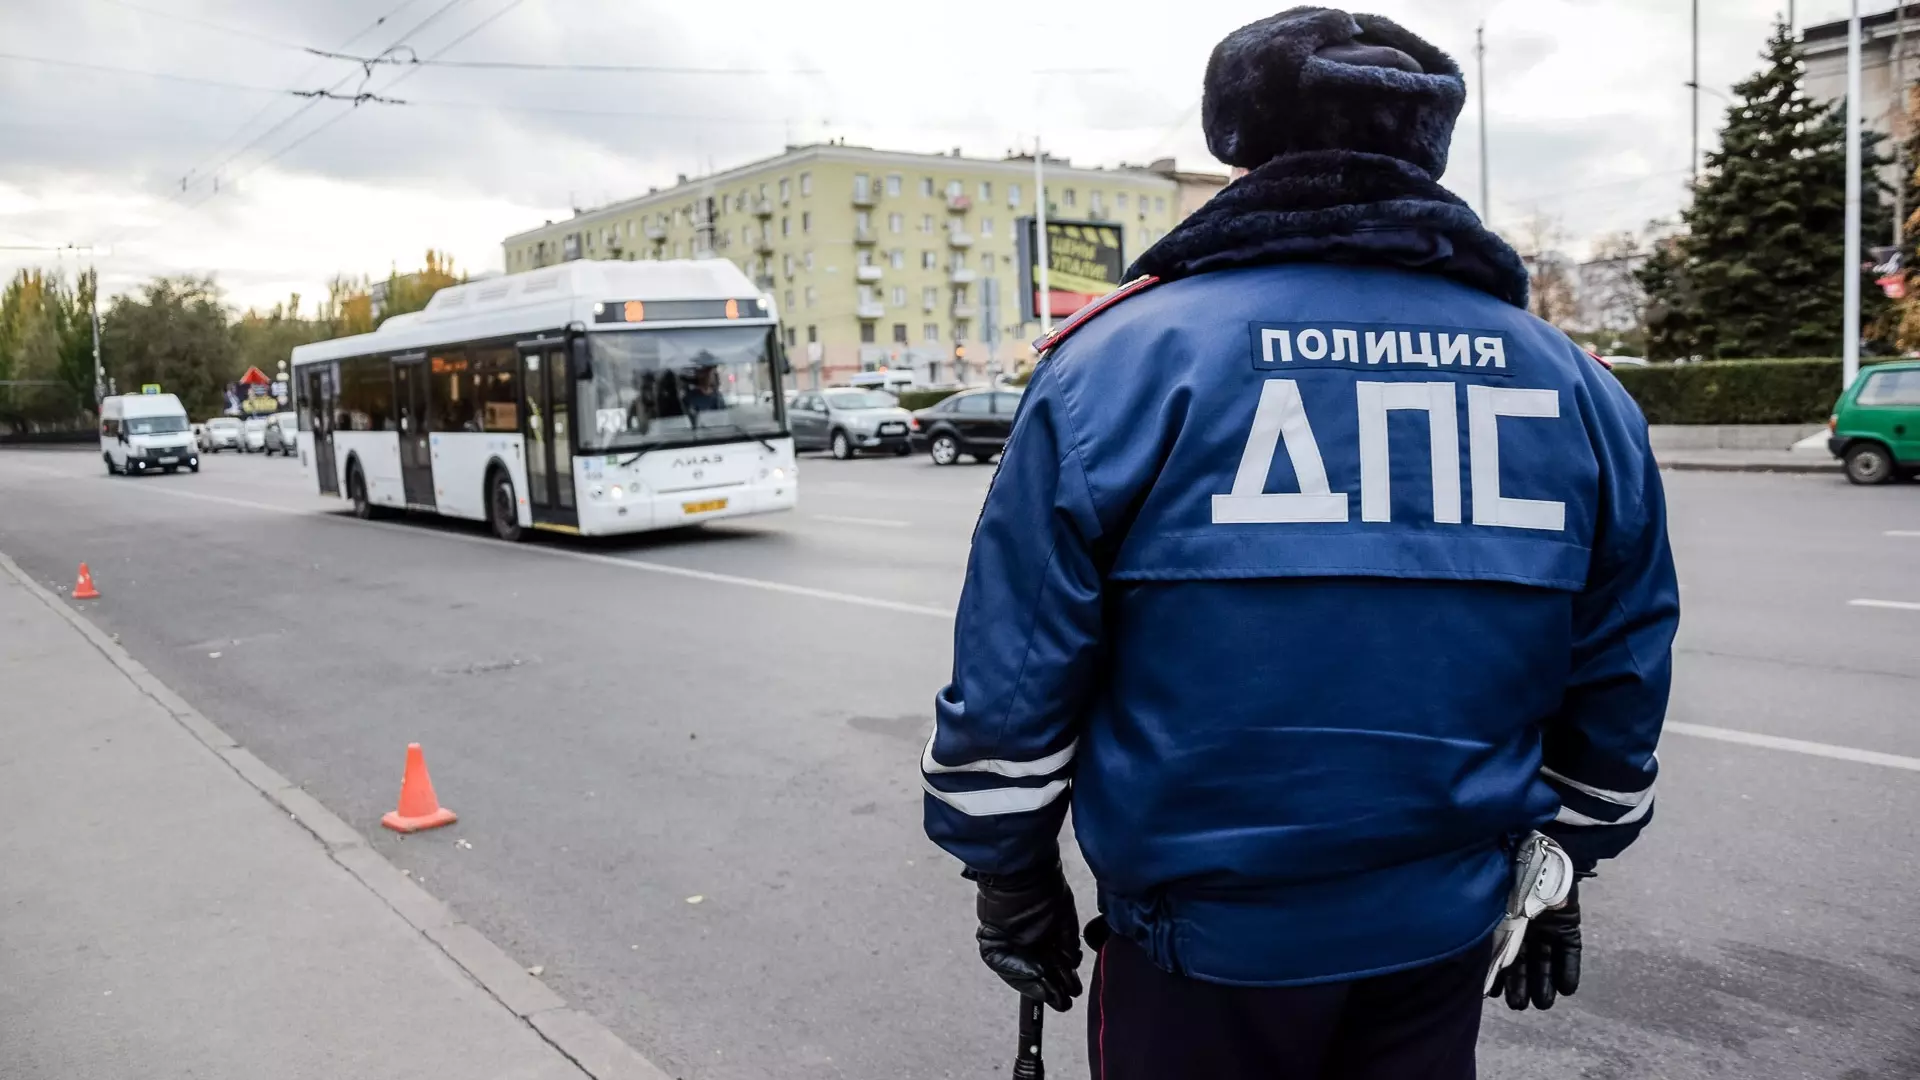 ГИБДД начинает массовые проверки автобусов в Башкортостане